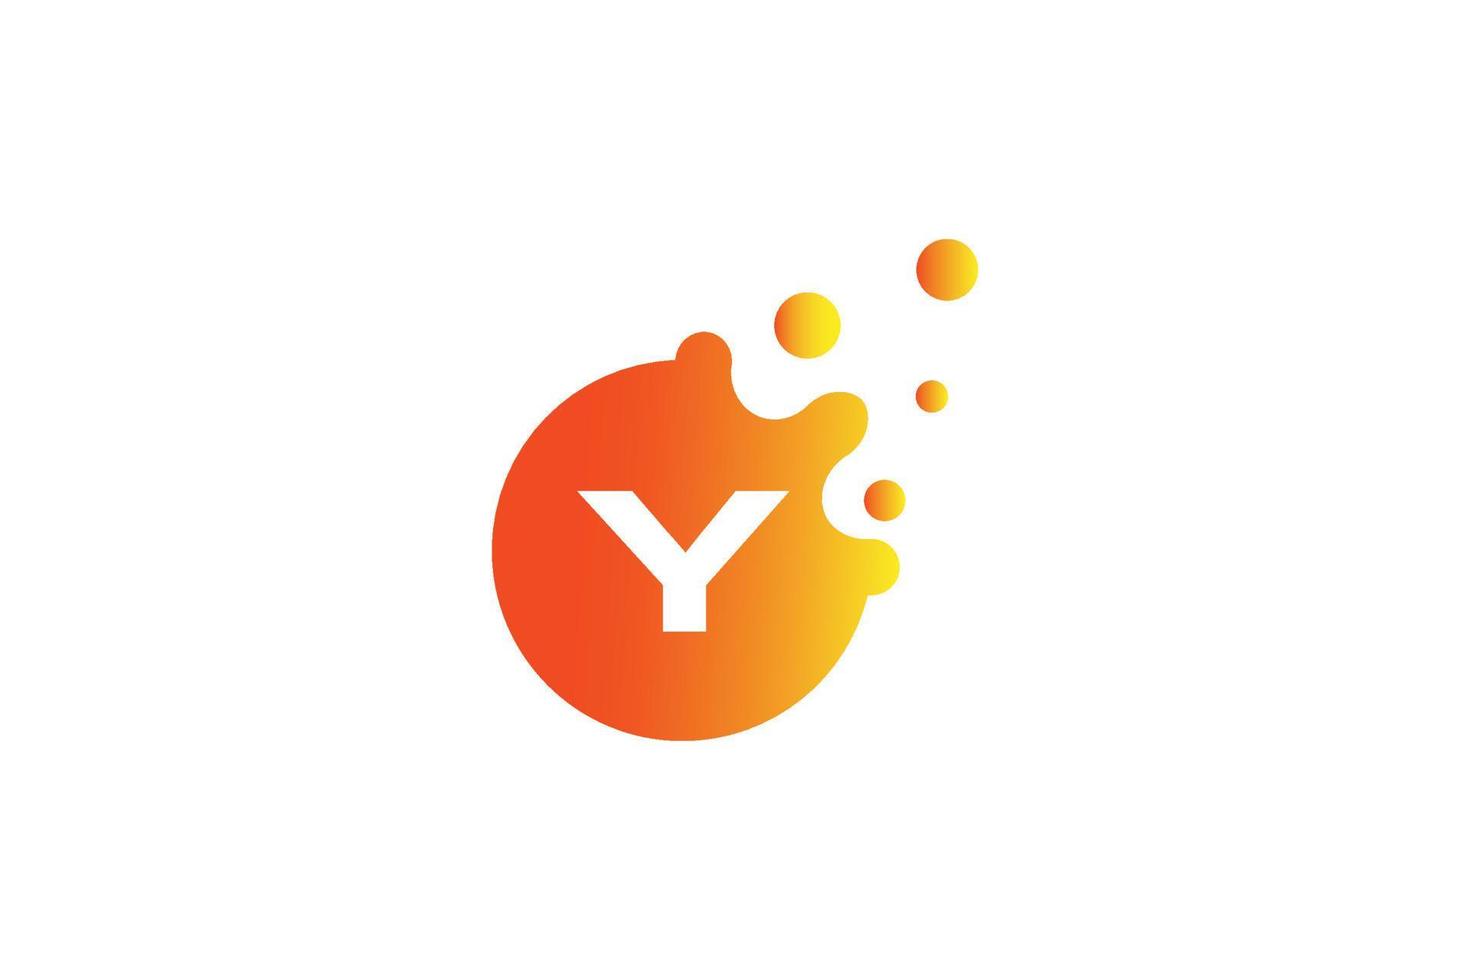 Buchstabe Y-Logo. y Briefdesignvektor mit Punktvektorillustration. buchstabenmarkenlogo mit orange und gelbem verlauf. vektor